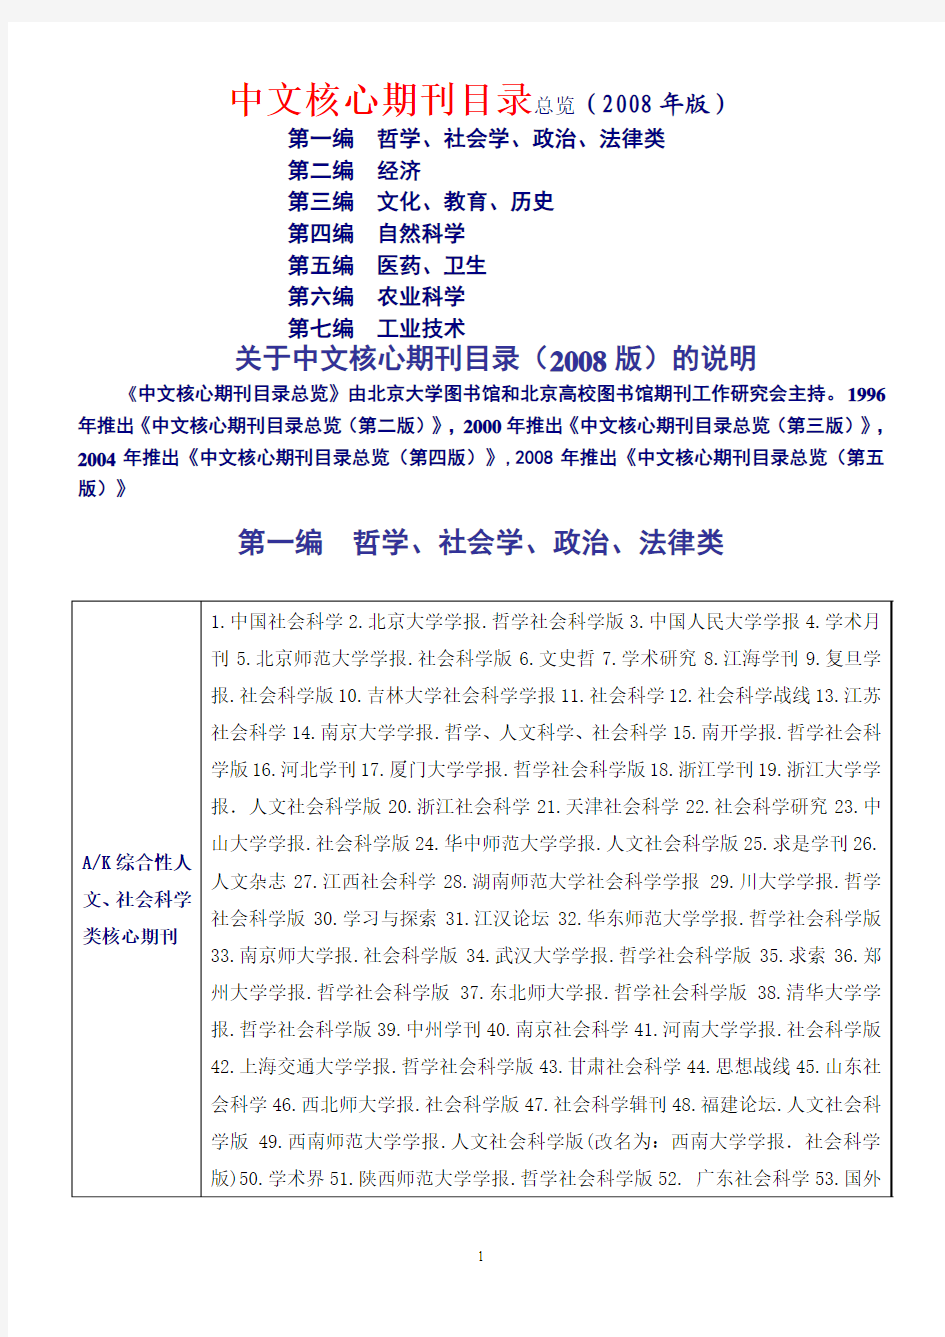 中文核心期刊目录总览(2008年版)